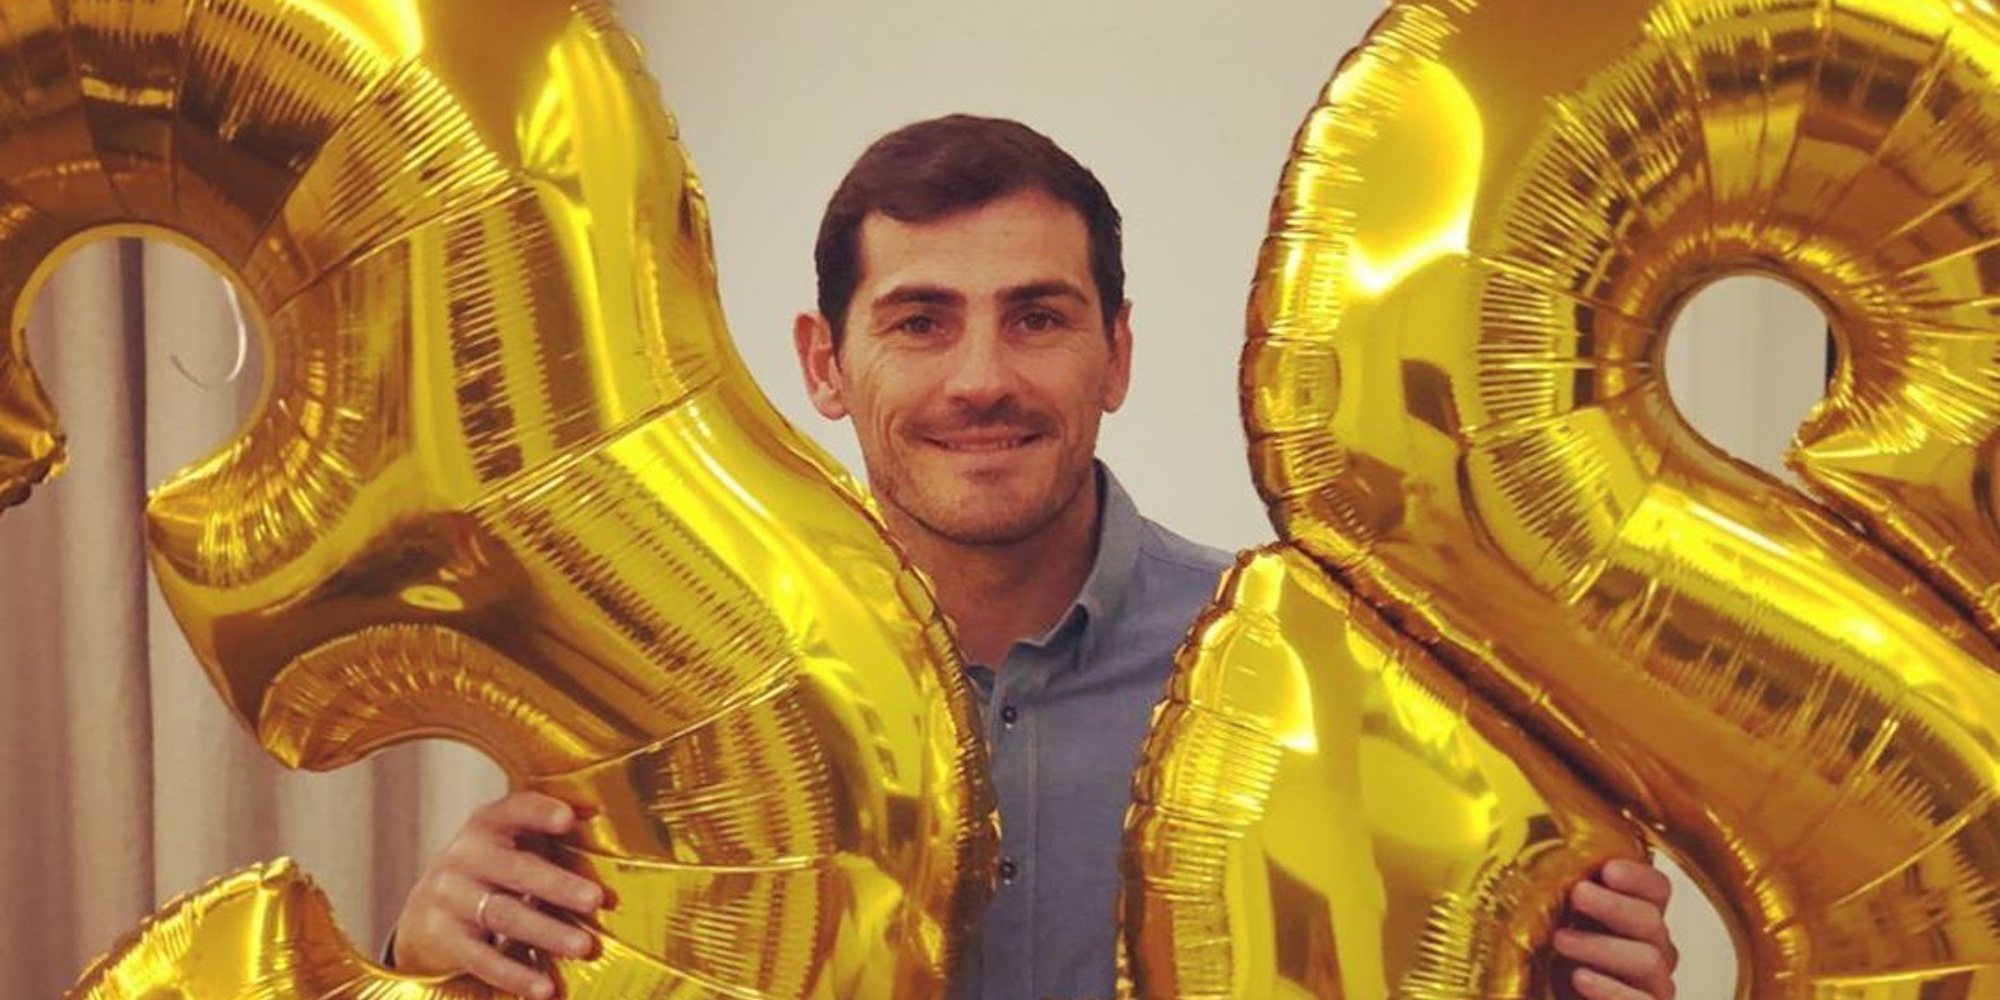 La felicitación de Sara Carbonero en el cumpleaños más difícil de Iker Casillas: "Celebramos tu vida"